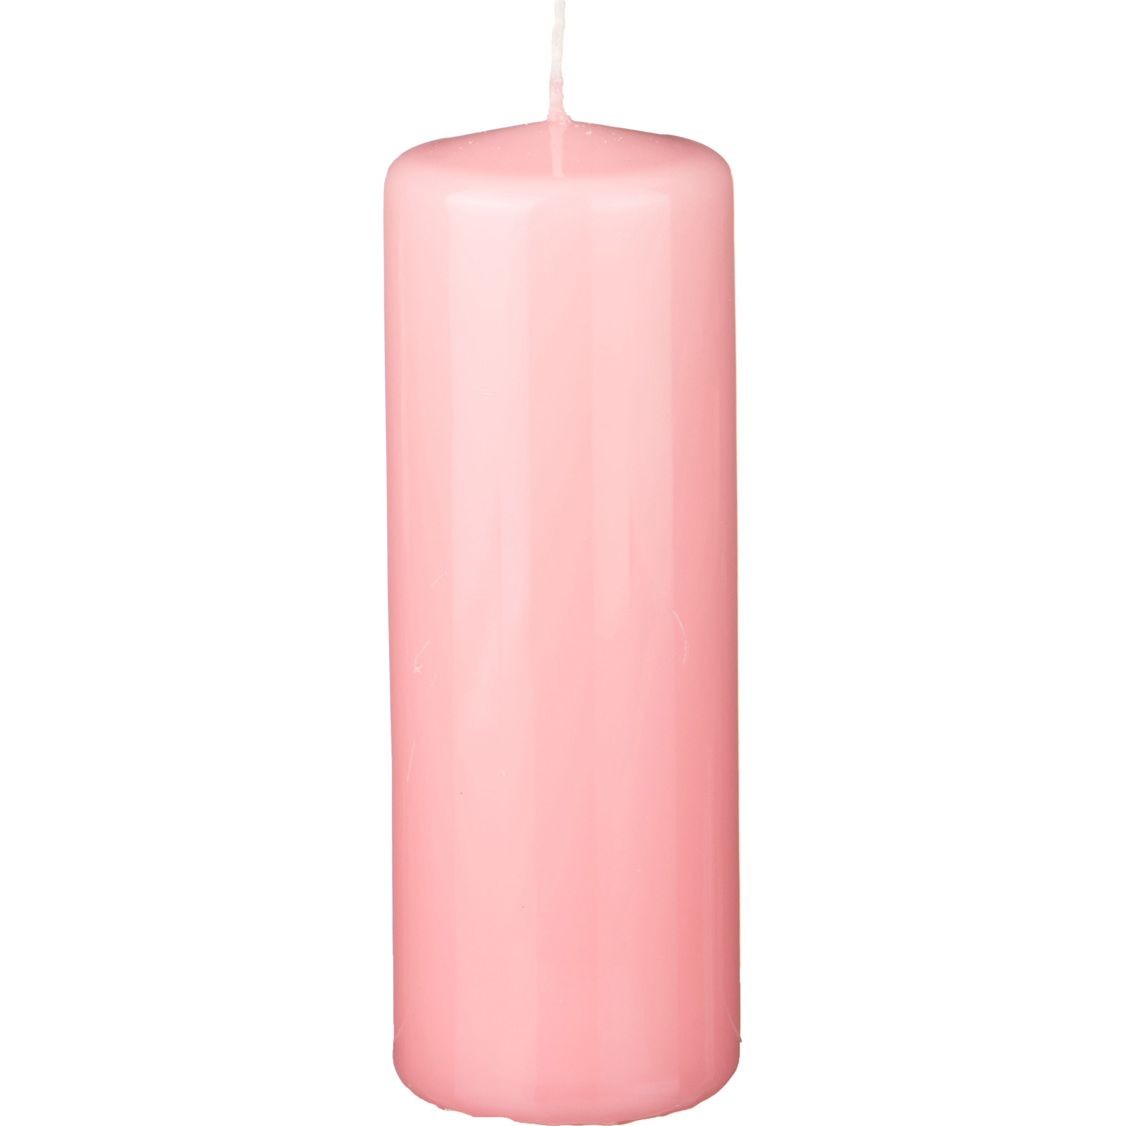 Свеча 20 см диаметр. Bartek свеча классическая - колонна 80*200 розовая (Light Pink) 6 шт в кор.. Свеча розовая. Свечка 7 розовая. Свеча витая розовая.